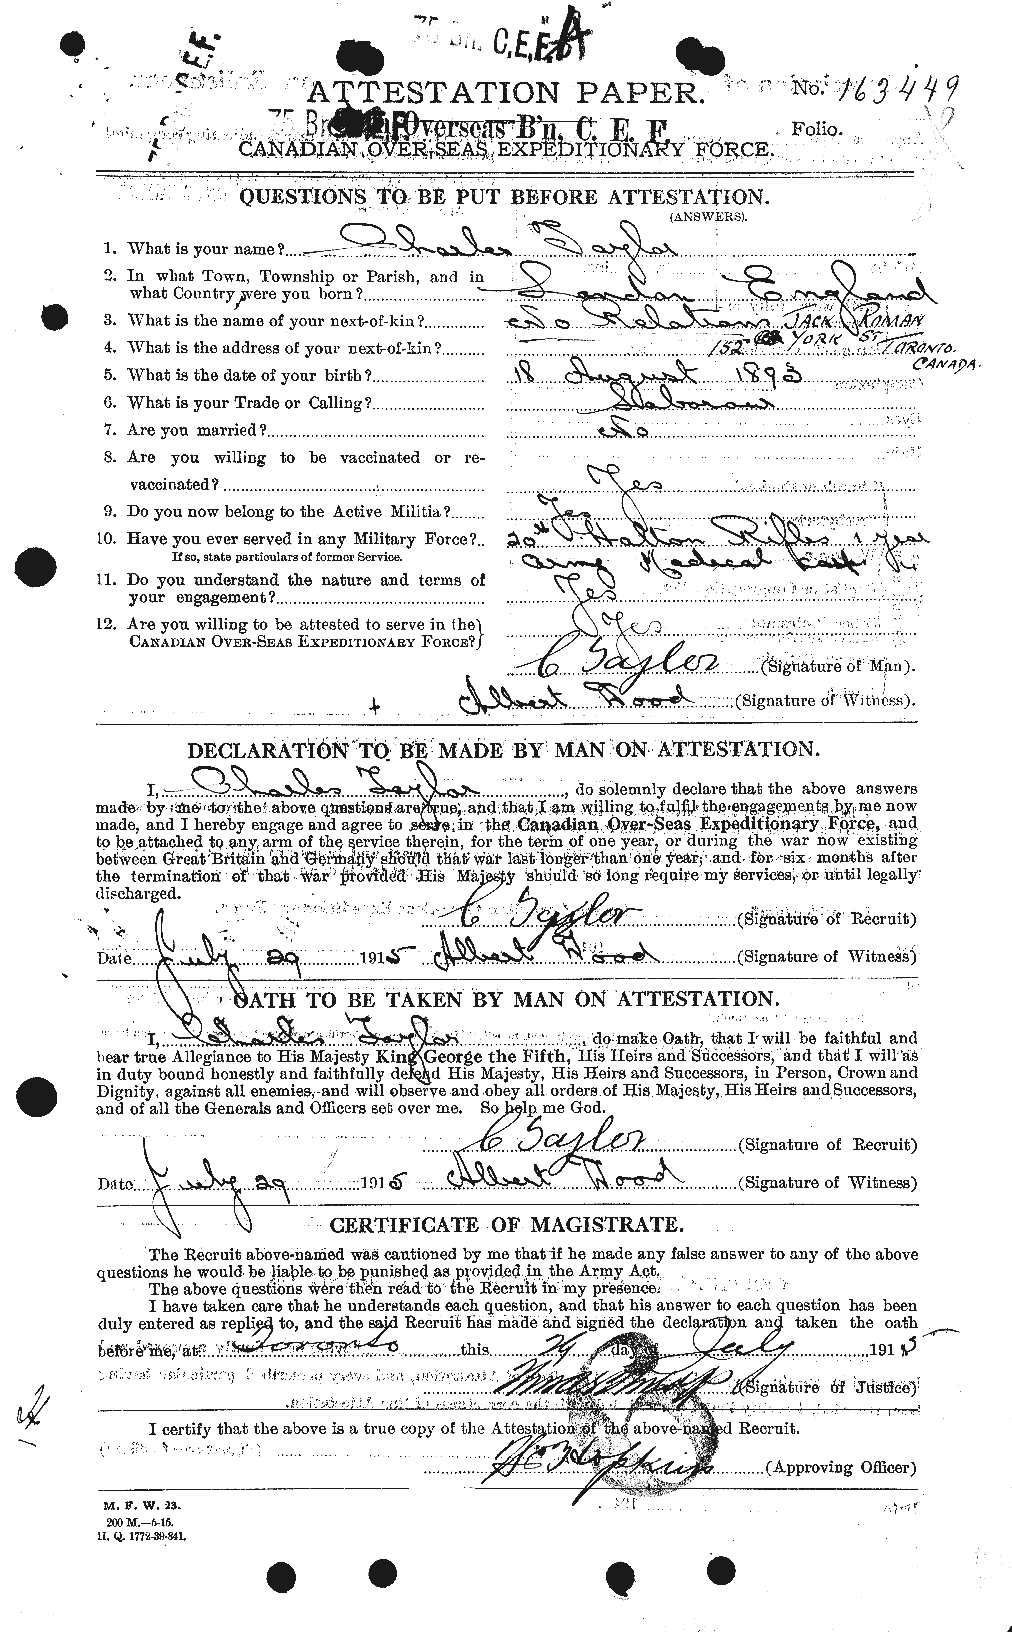 Dossiers du Personnel de la Première Guerre mondiale - CEC 626801a